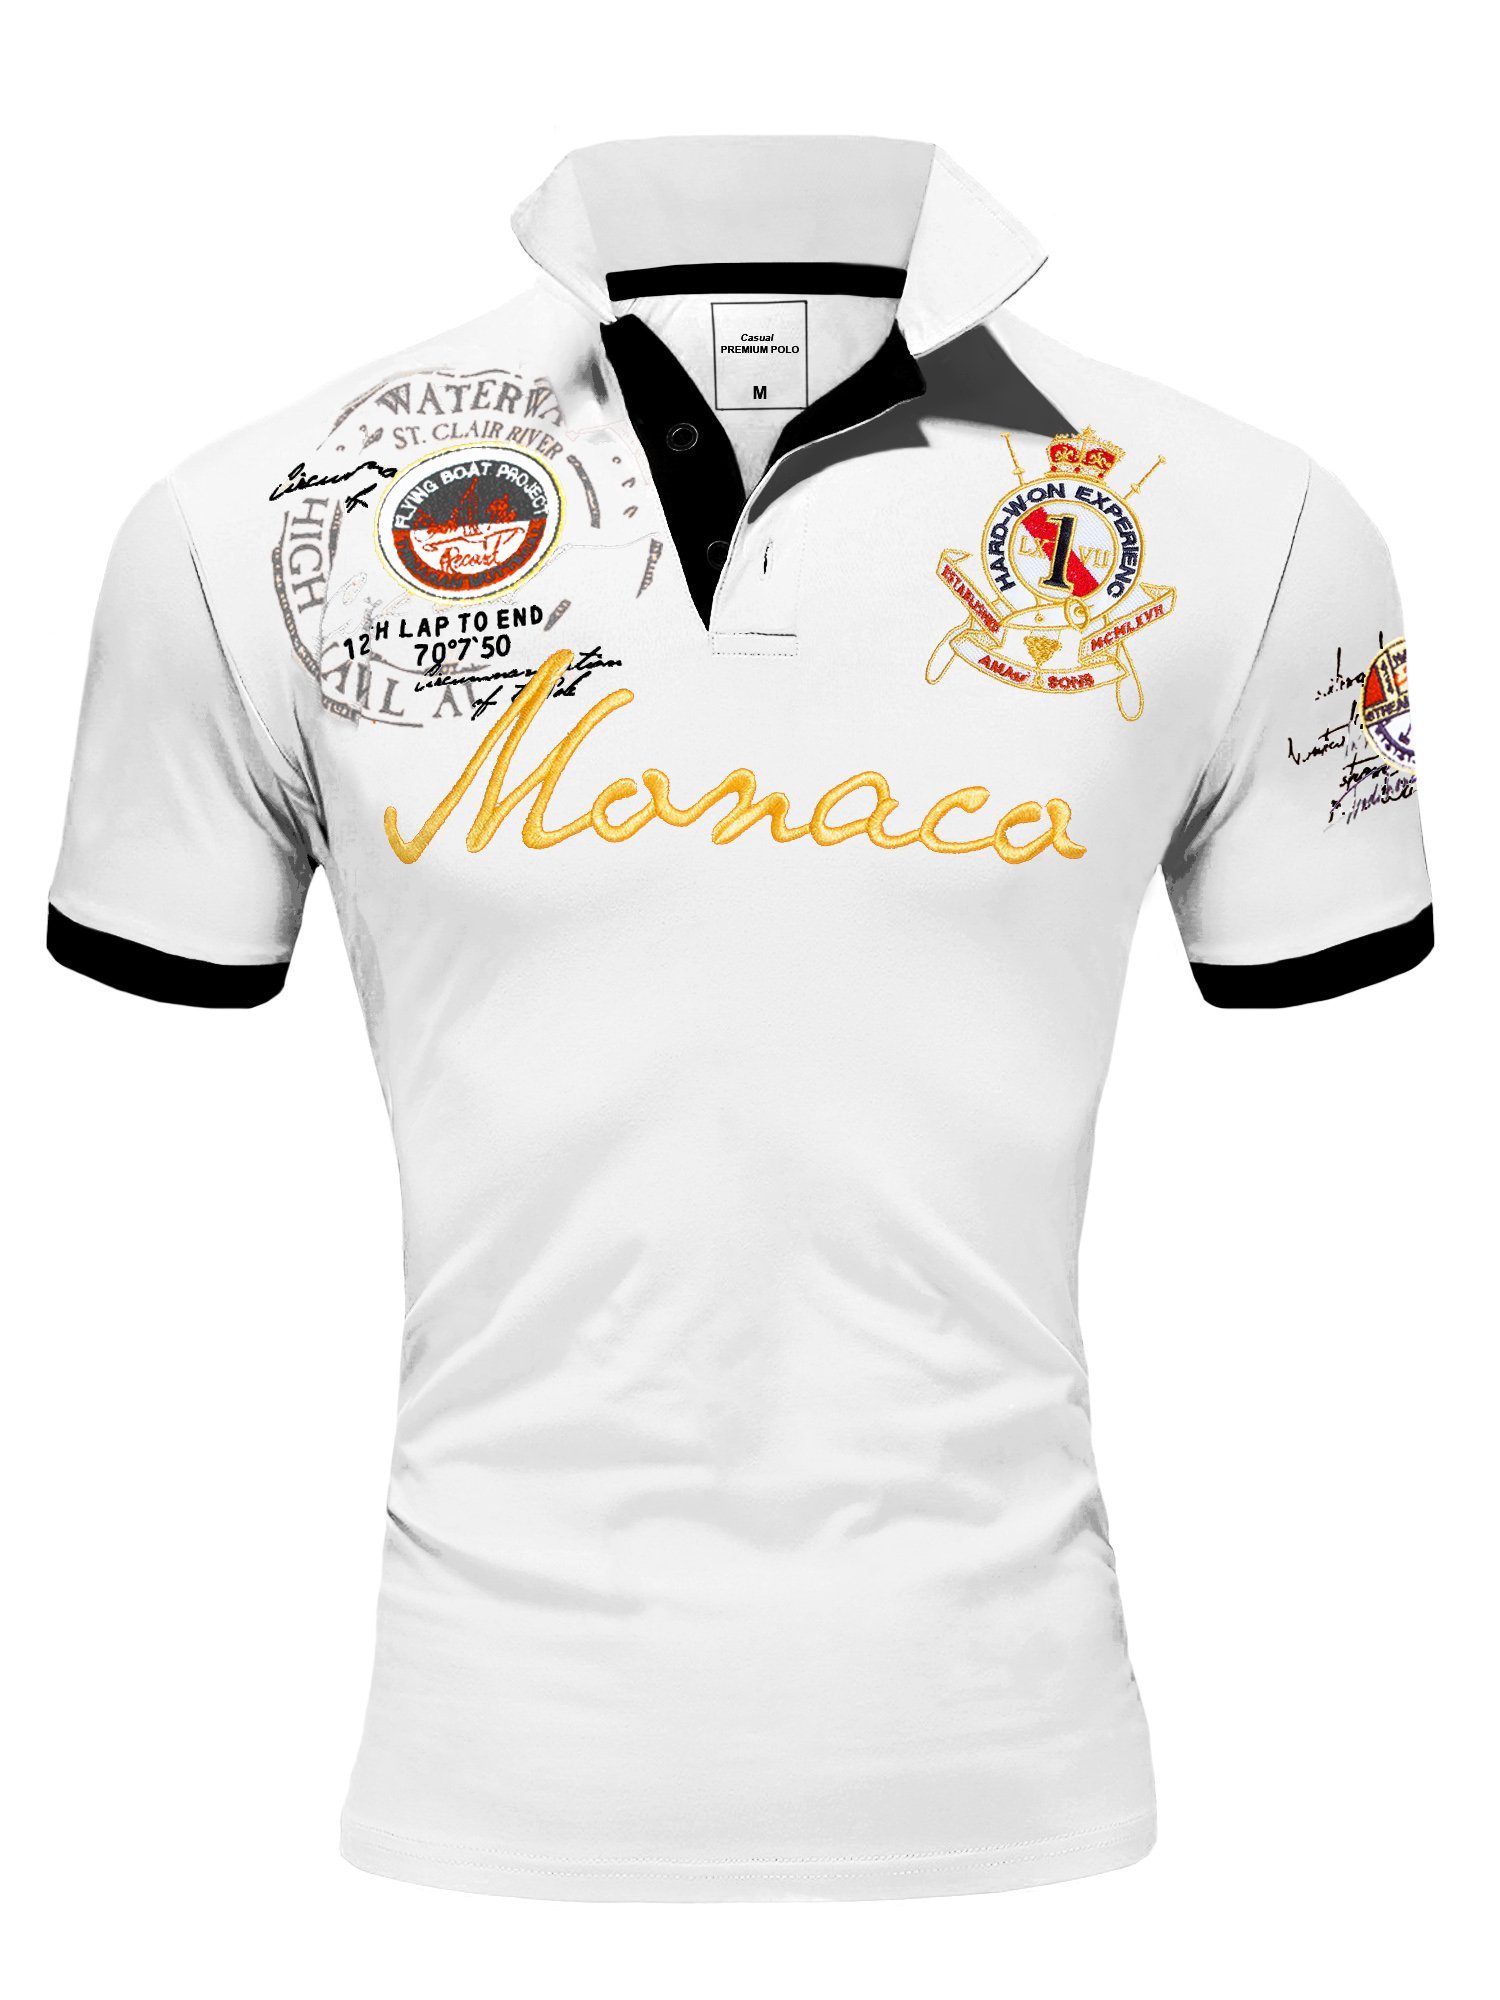 Amaci&Sons Poloshirt Monaco 2.0 Poloshirt mit Stickerei Herren Basic Kontrast Monaco Stickerei Kurzarm Polohemd T-Shirt Weiß | Poloshirts